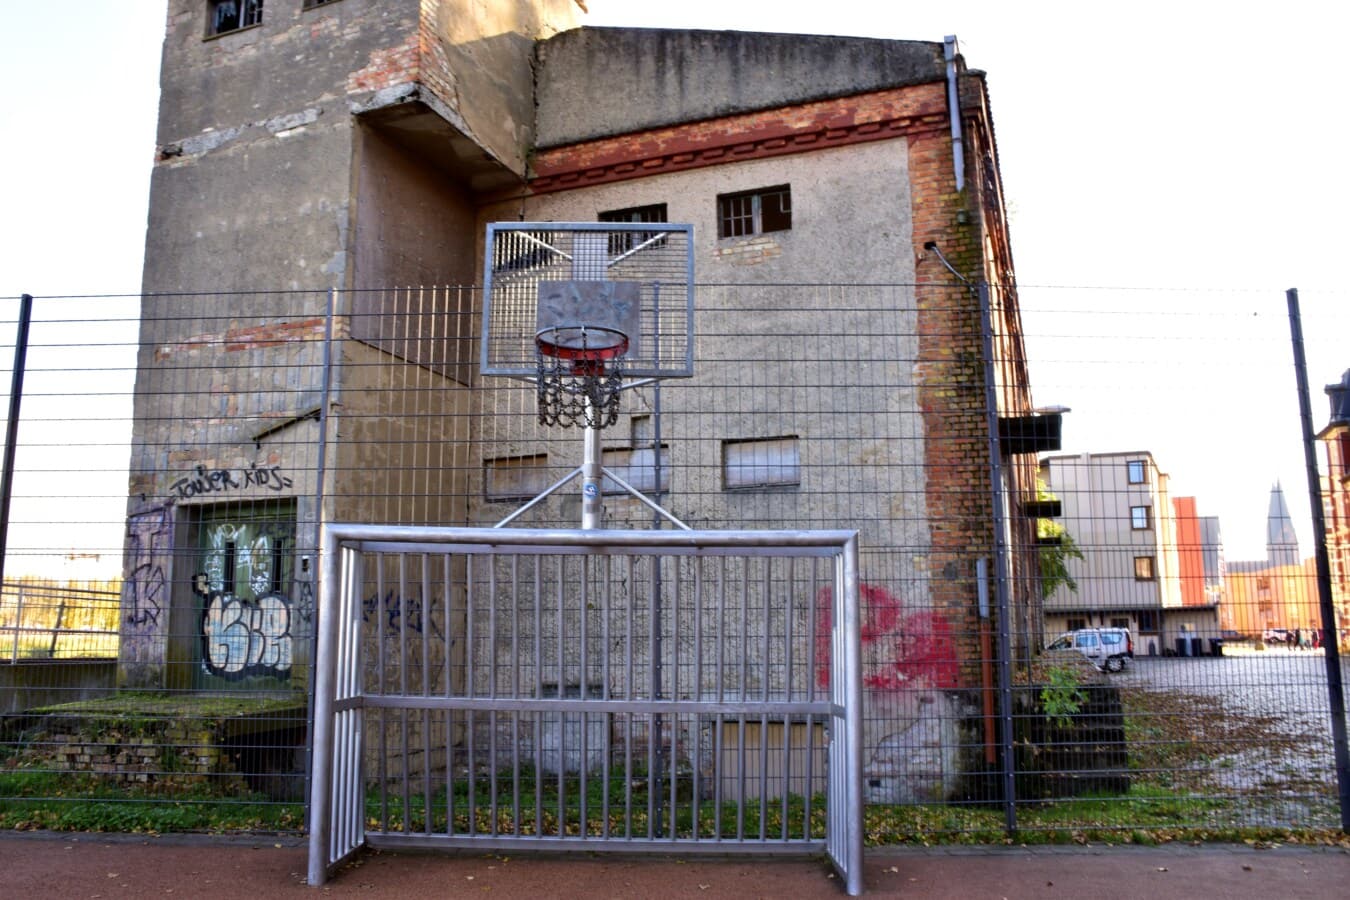 Basketbalveld, stedelijk gebied, verlaten, verval, Straat, industriële, braakliggende, het platform, oude, graffiti